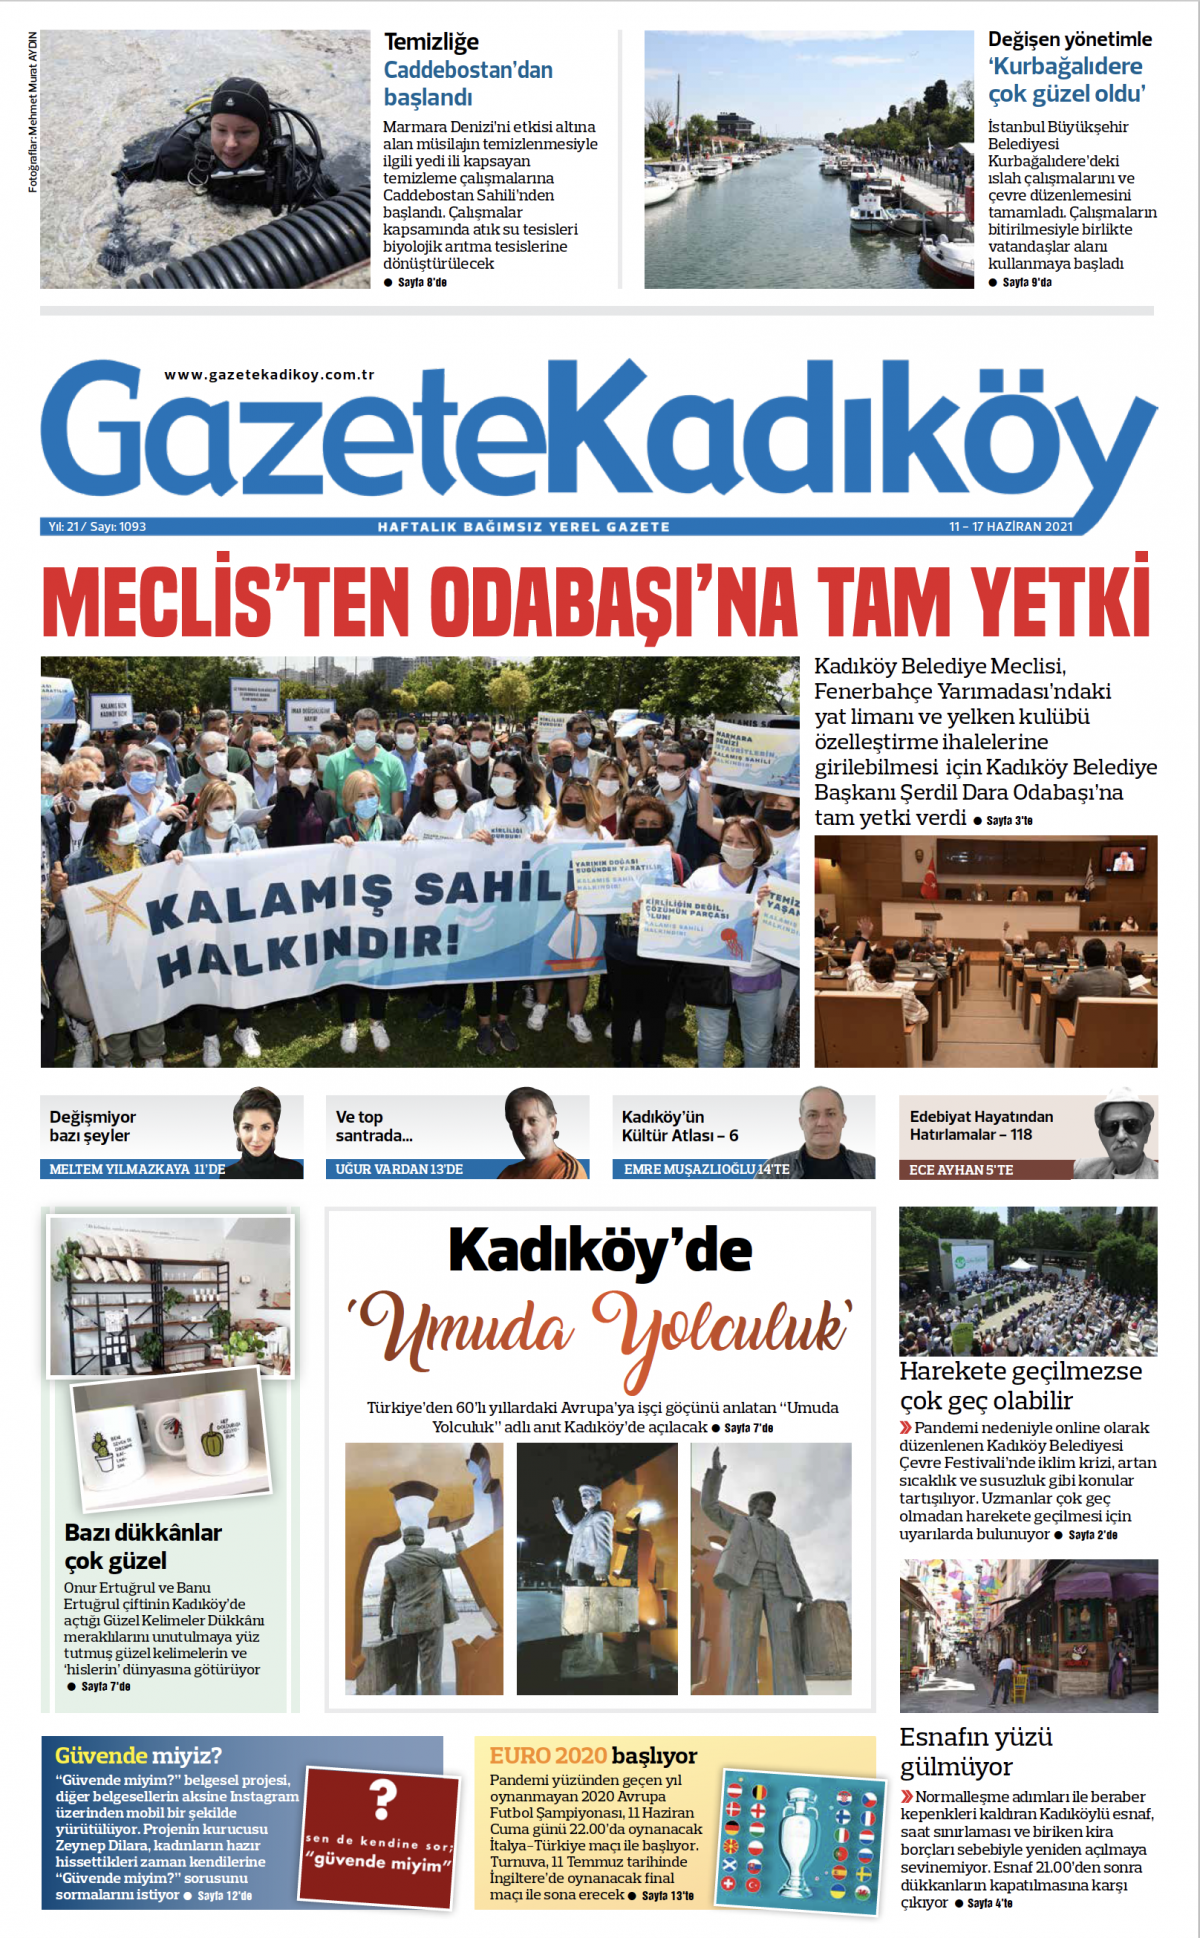 Gazete Kadıköy - 1093.Sayı